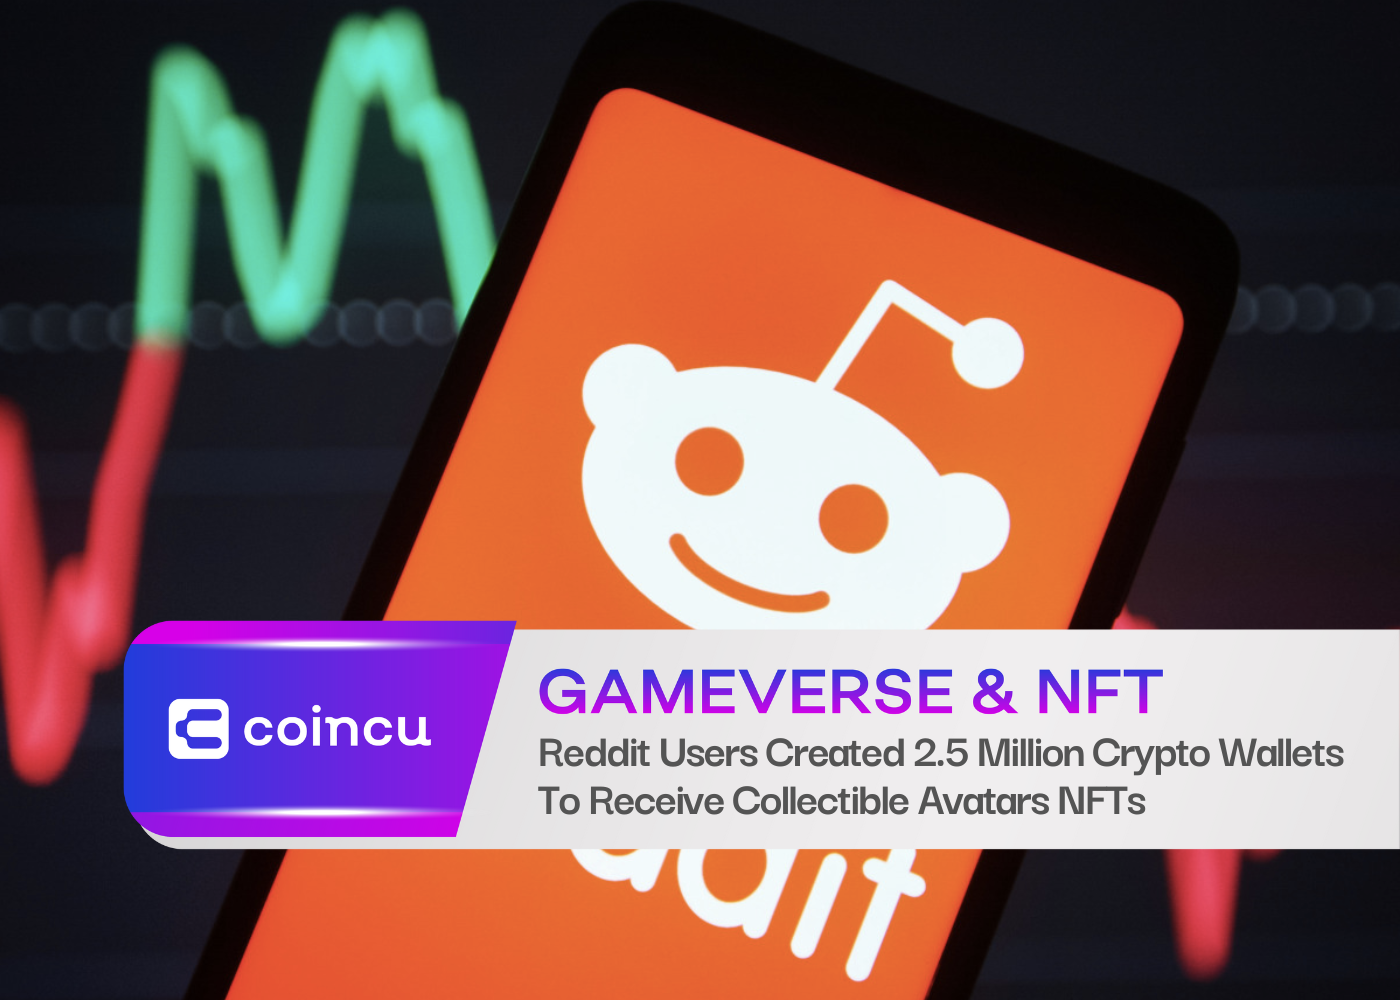 Reddit 用户创建了 2.5 万个加密钱包来接收可收藏的头像 NFT